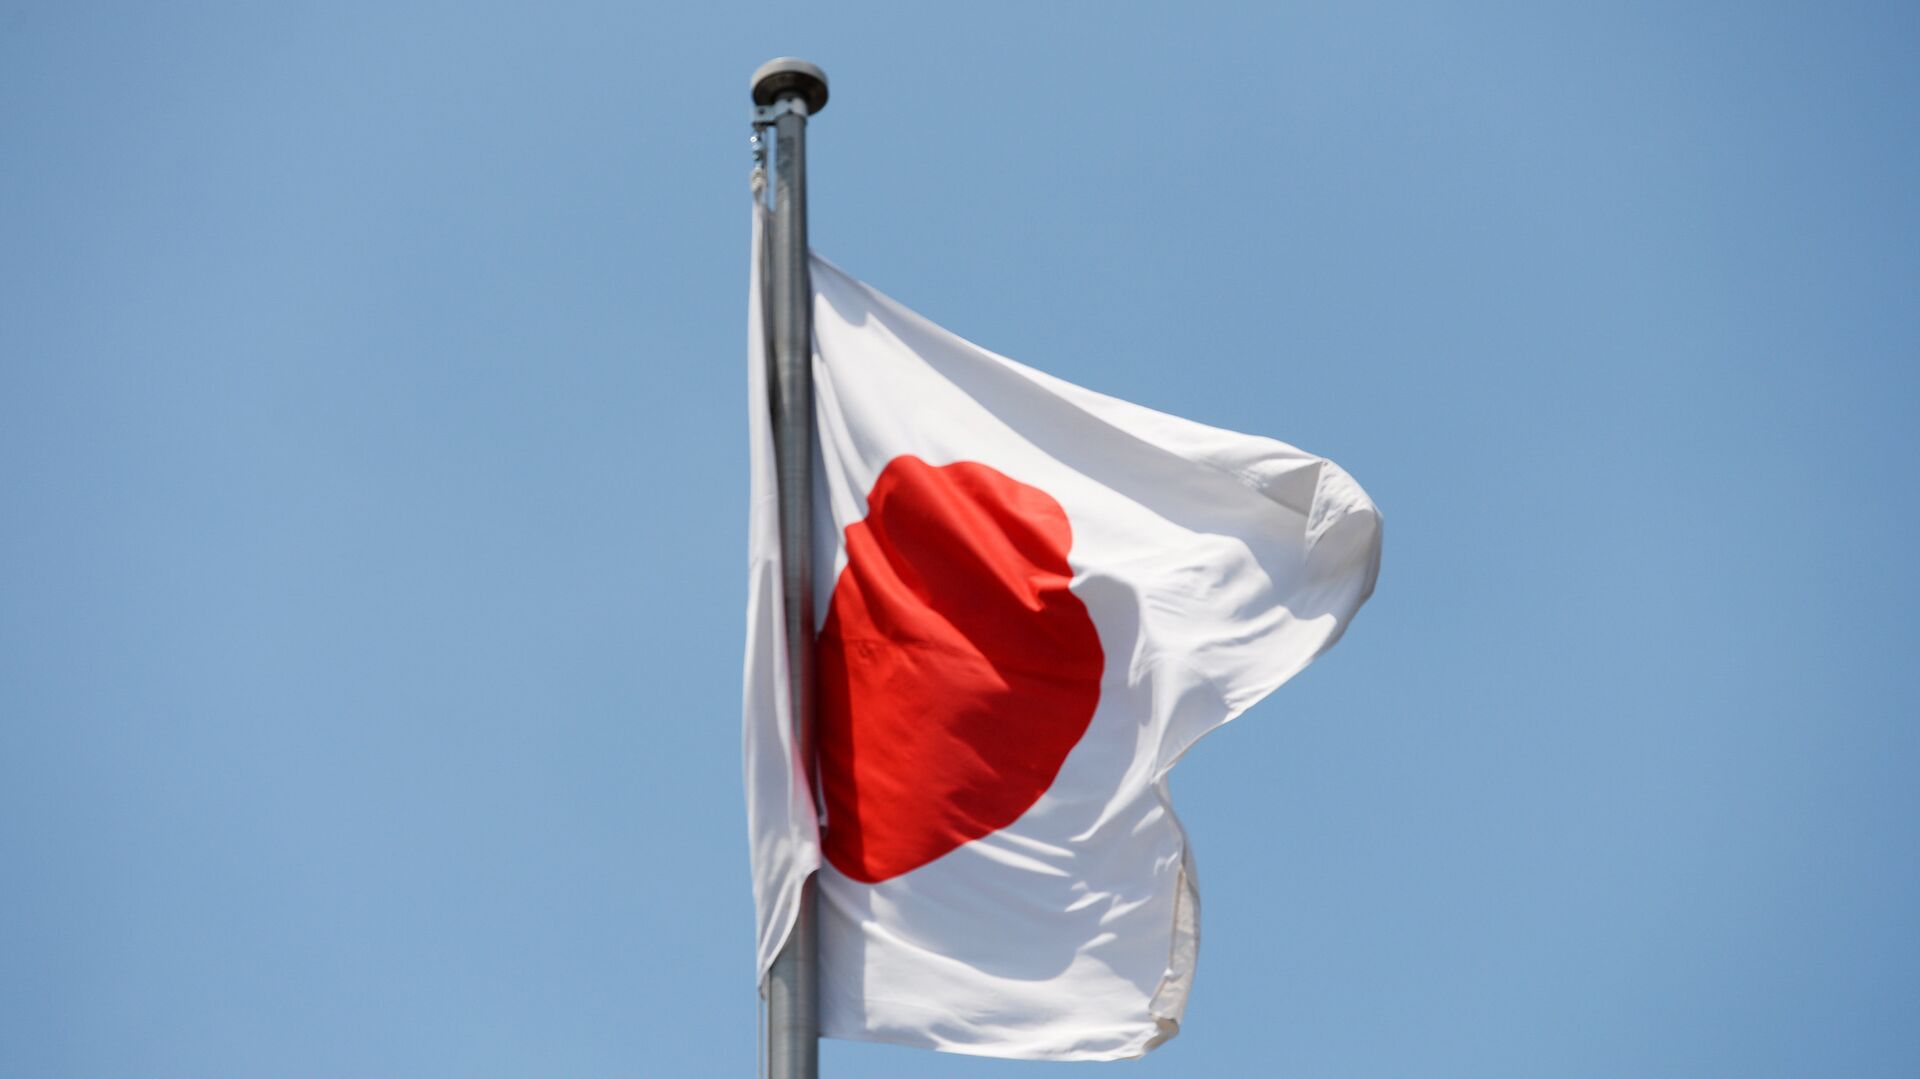 The state flag of Japan. - Sputnik International, 1920, 26.09.2022